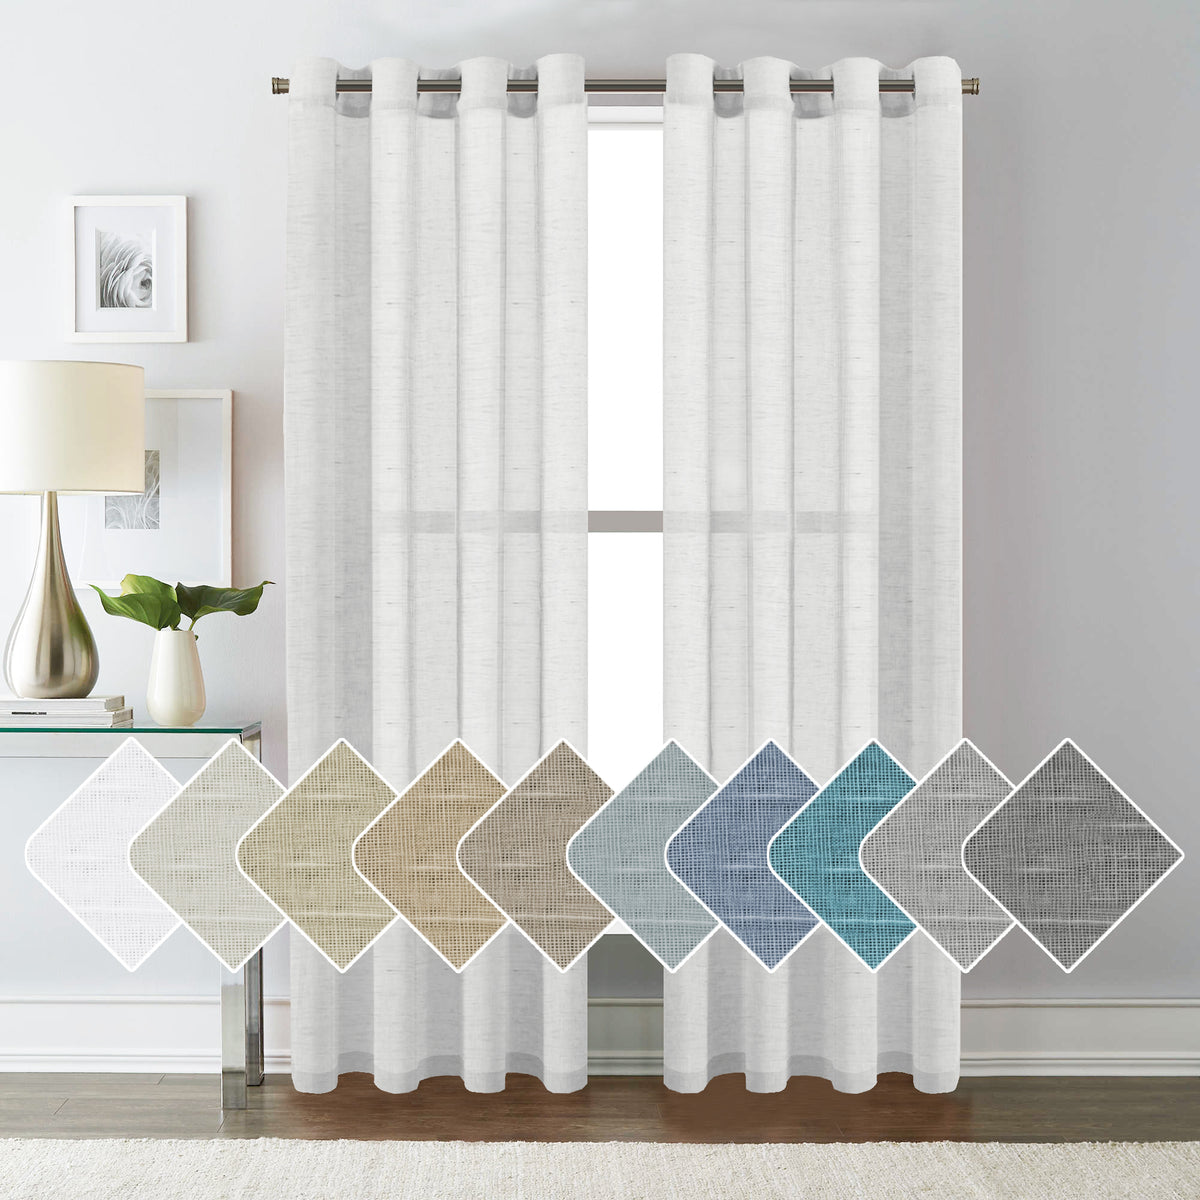 Soft Filtering Light Luxury Linen Back Tab Semi Sheer Curtains